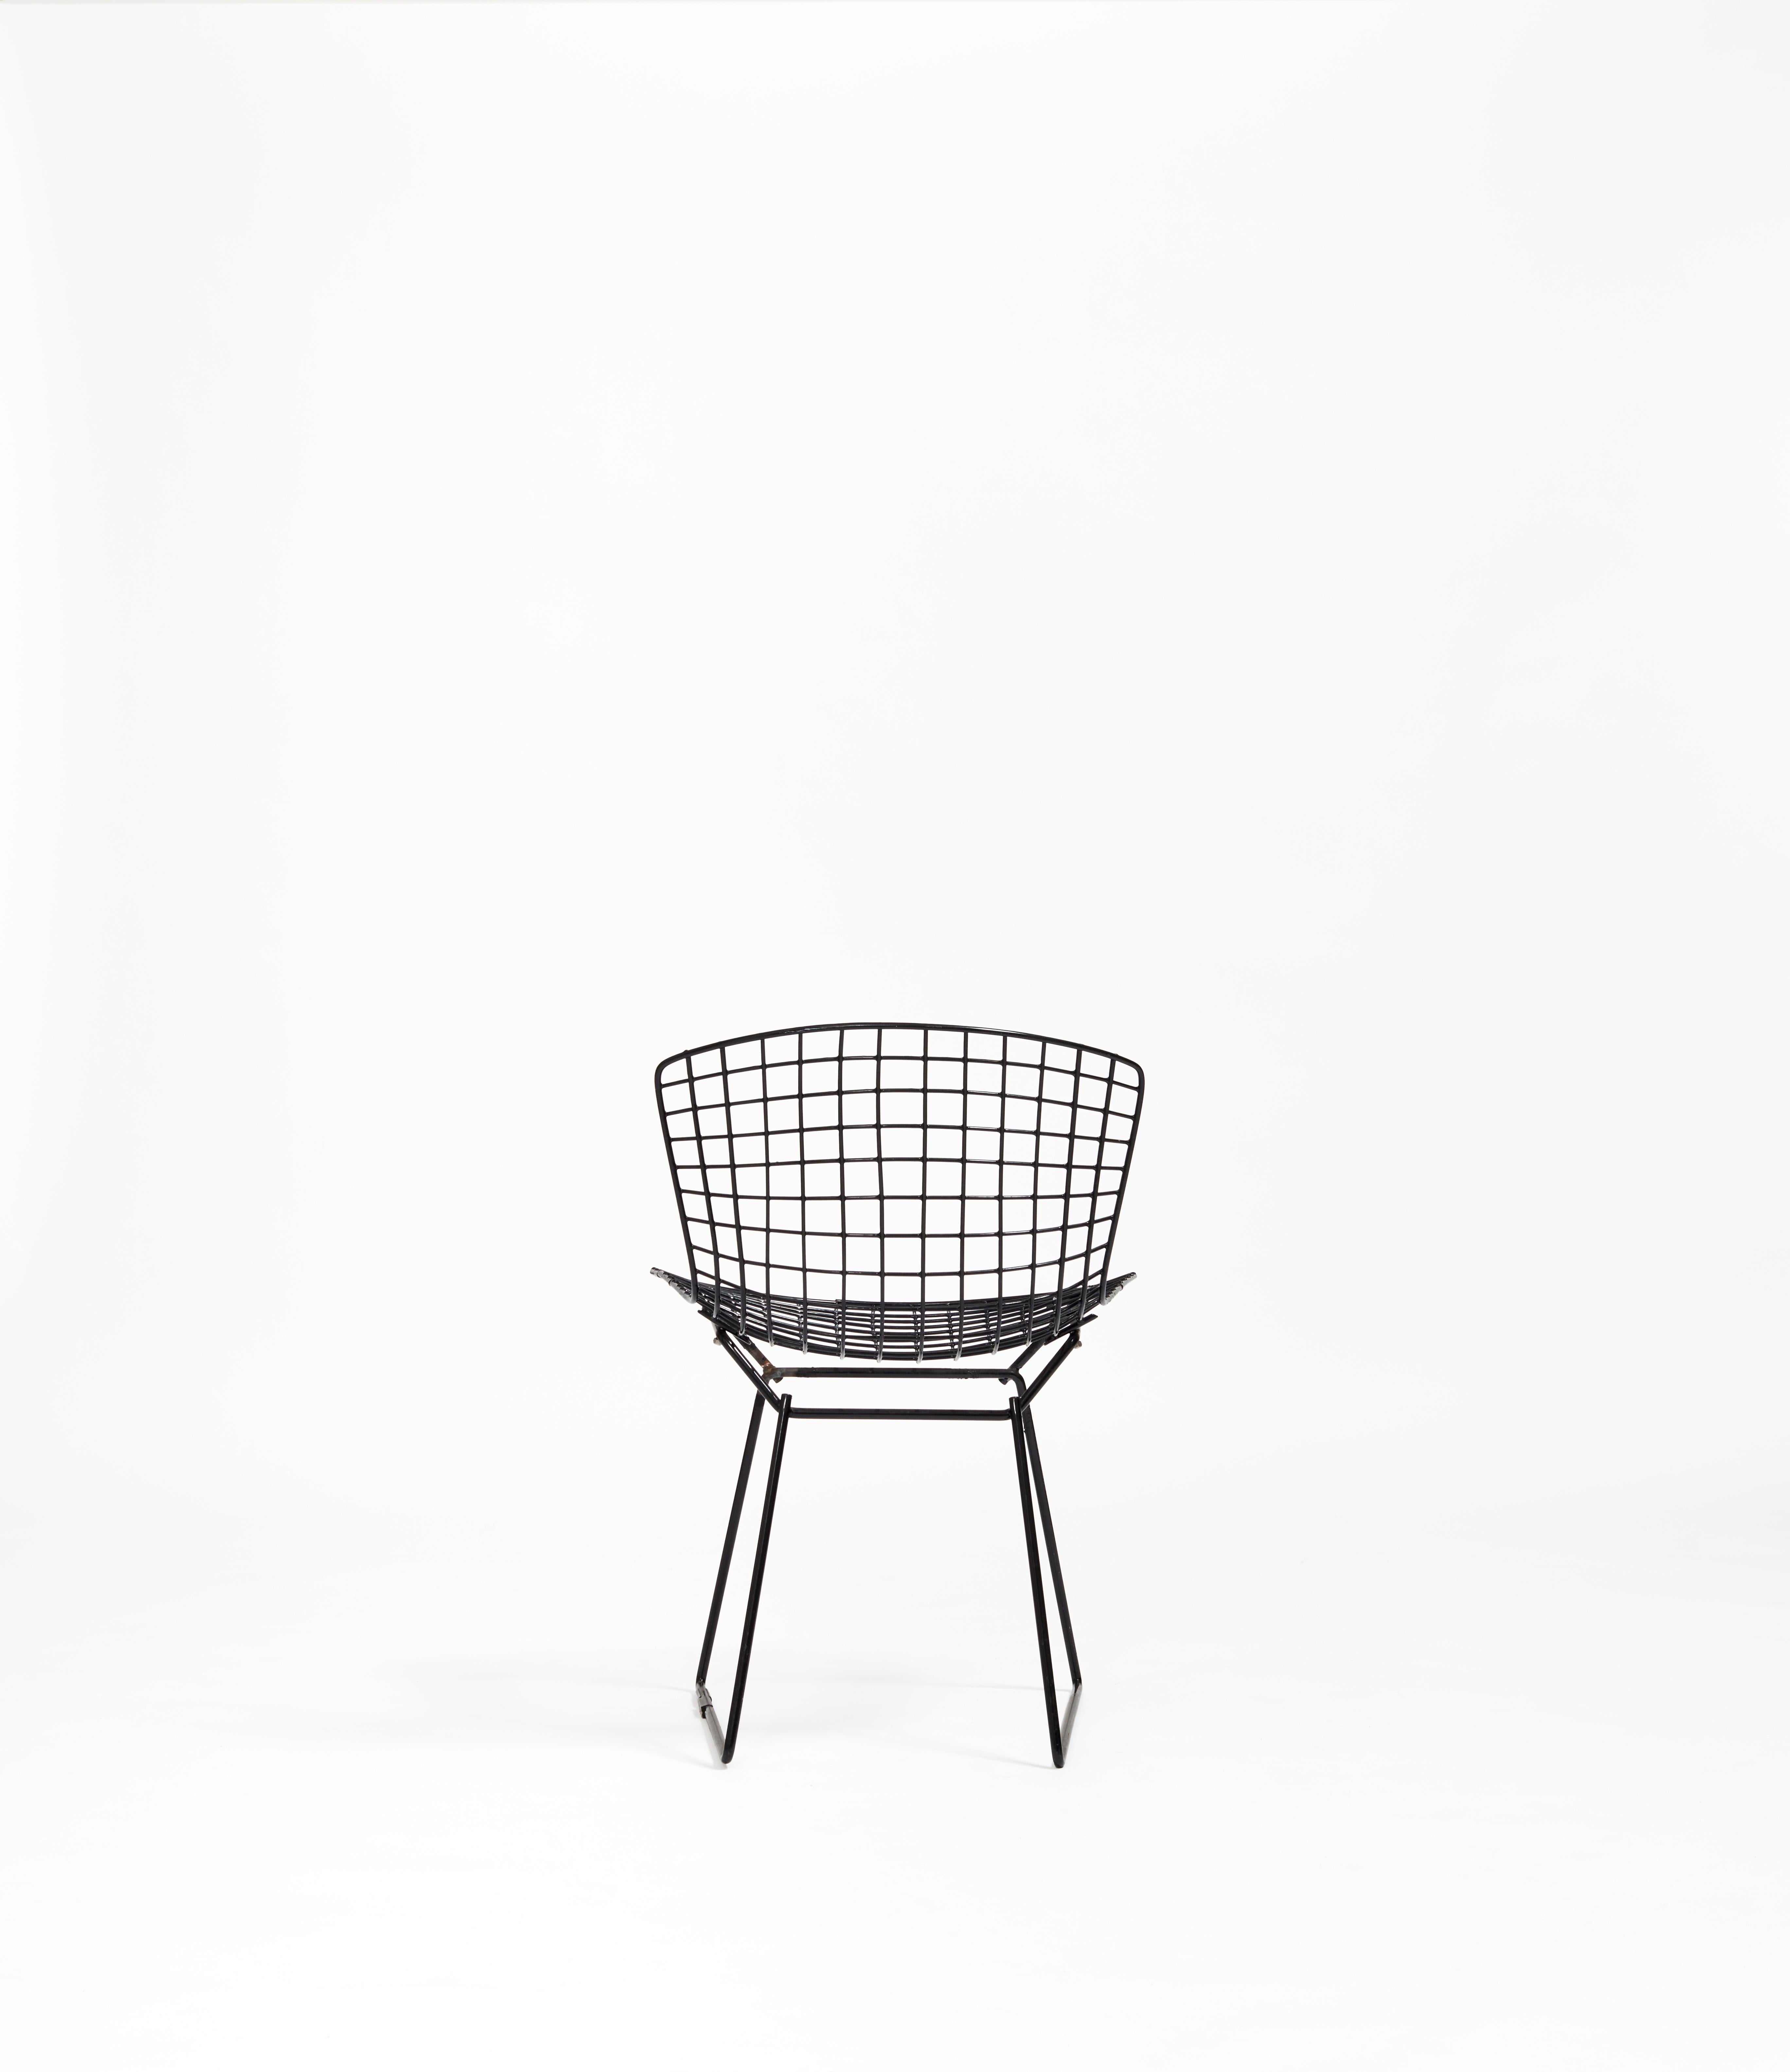 La chaise d'appoint de Bertoia est une expression définitivement emblématique de la sensibilité du milieu du siècle, avec un accent particulier sur la relation entre l'esthétique et la durabilité. Sa silhouette est l'itération initiale d'un style